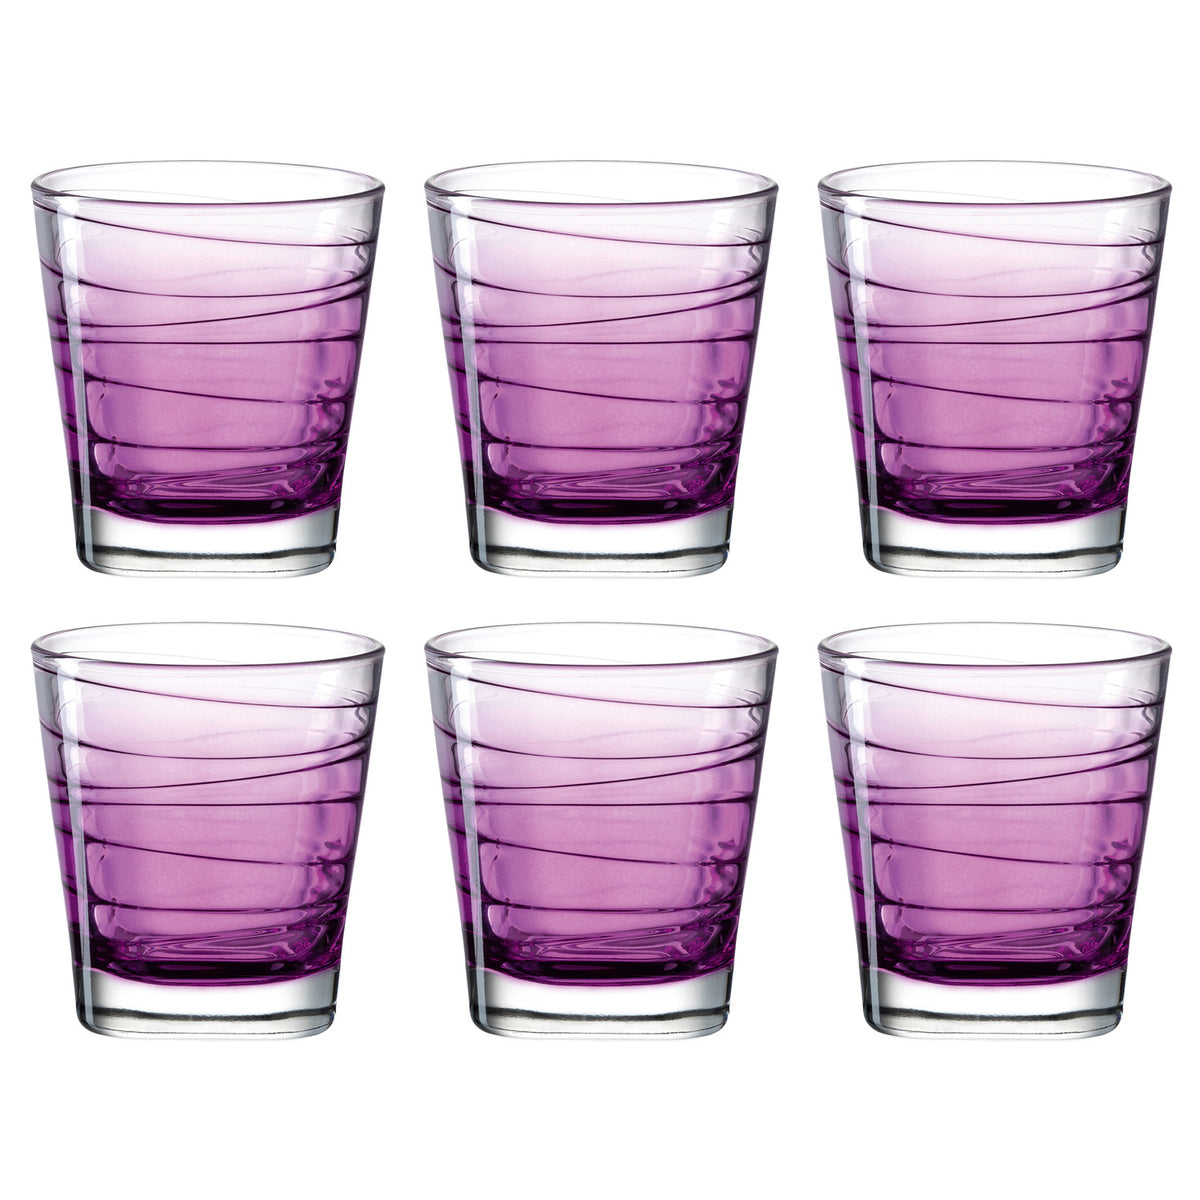 Trinkglas VARIO STRUTTURA 6er-Set 250 ml violett